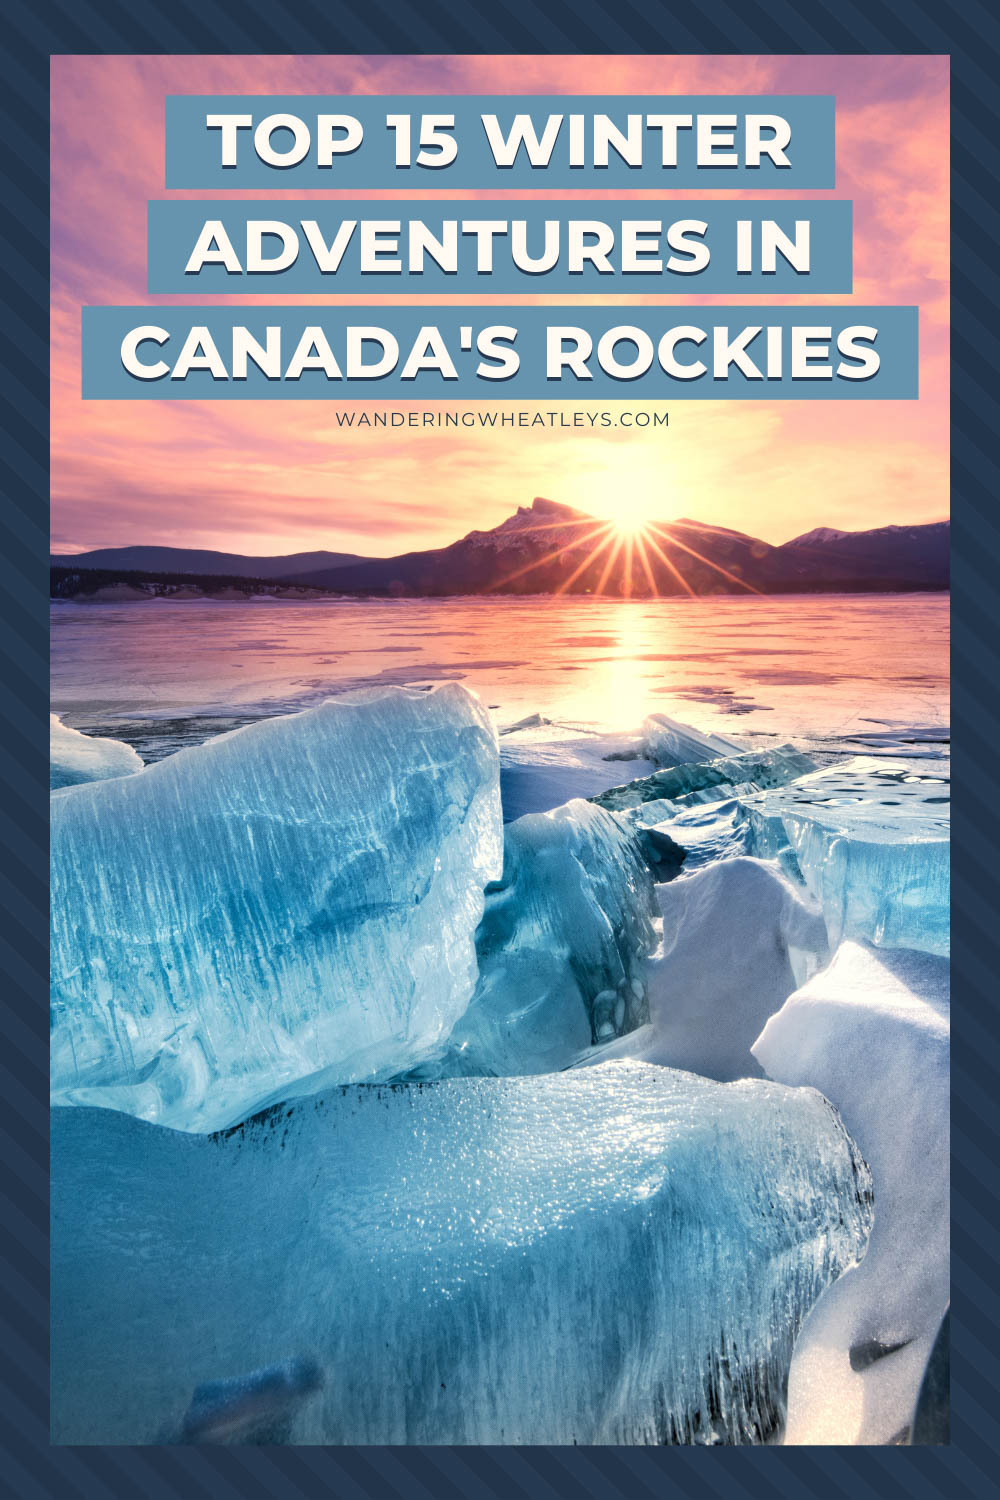 Best Winter Activities in The Canadian Rockies